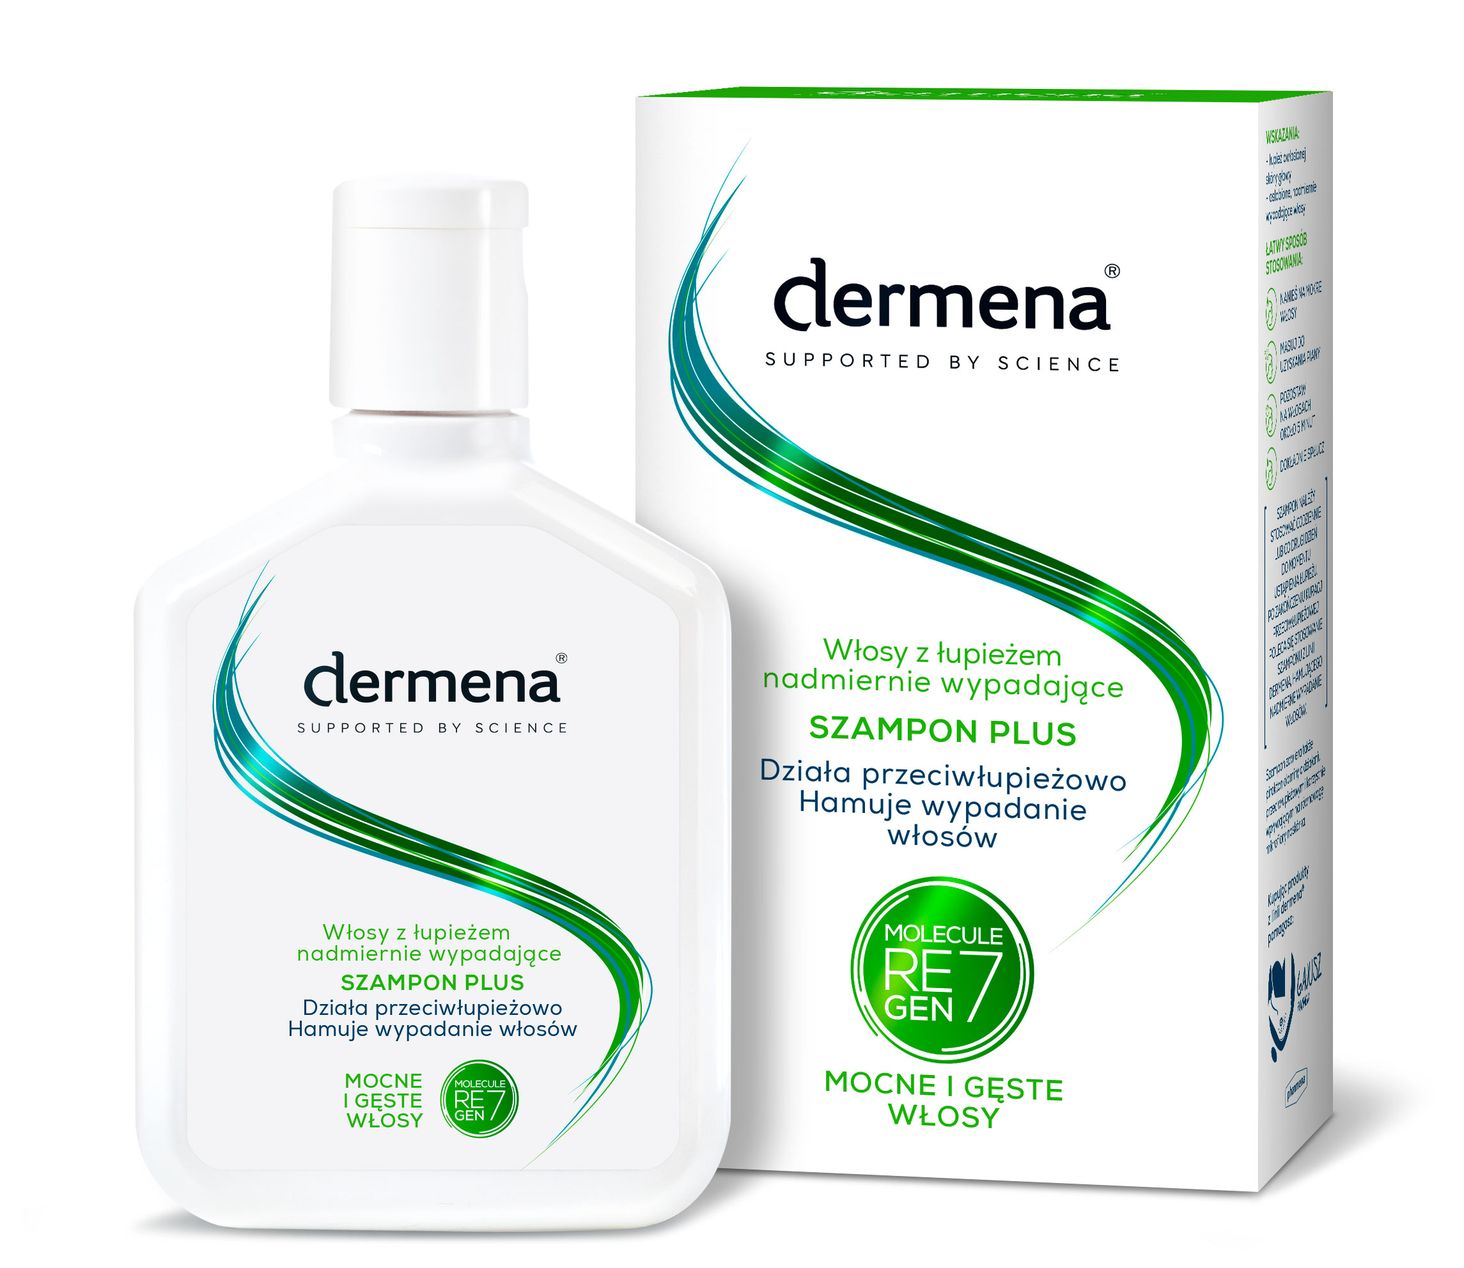 dermokosmetyki szampon dla mezczyzn przeciwlupiezowy